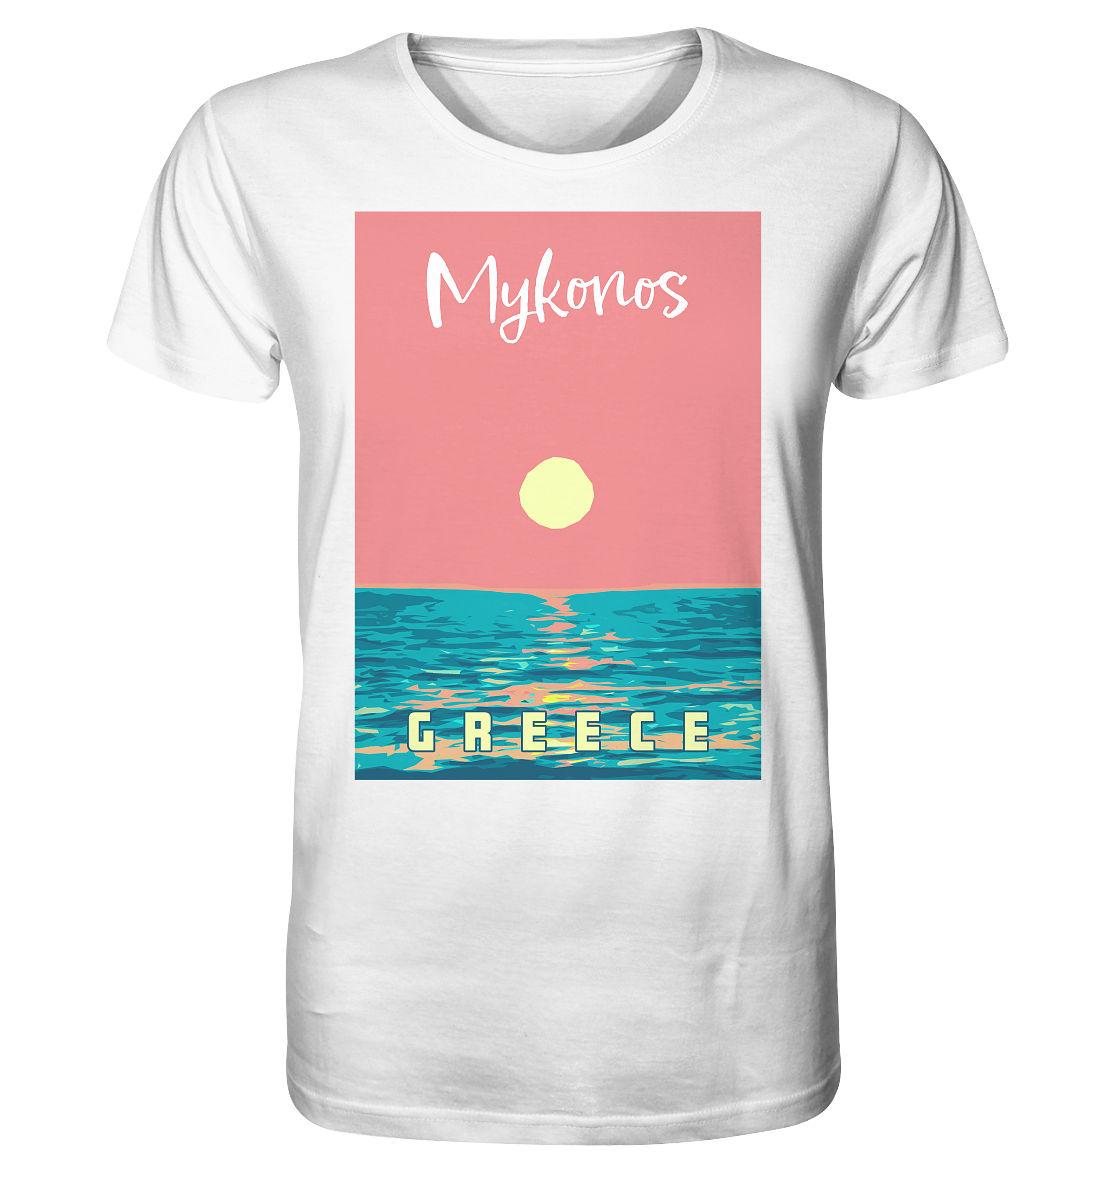 Sunset Ocean Mykonos Greece - Organic Shirt